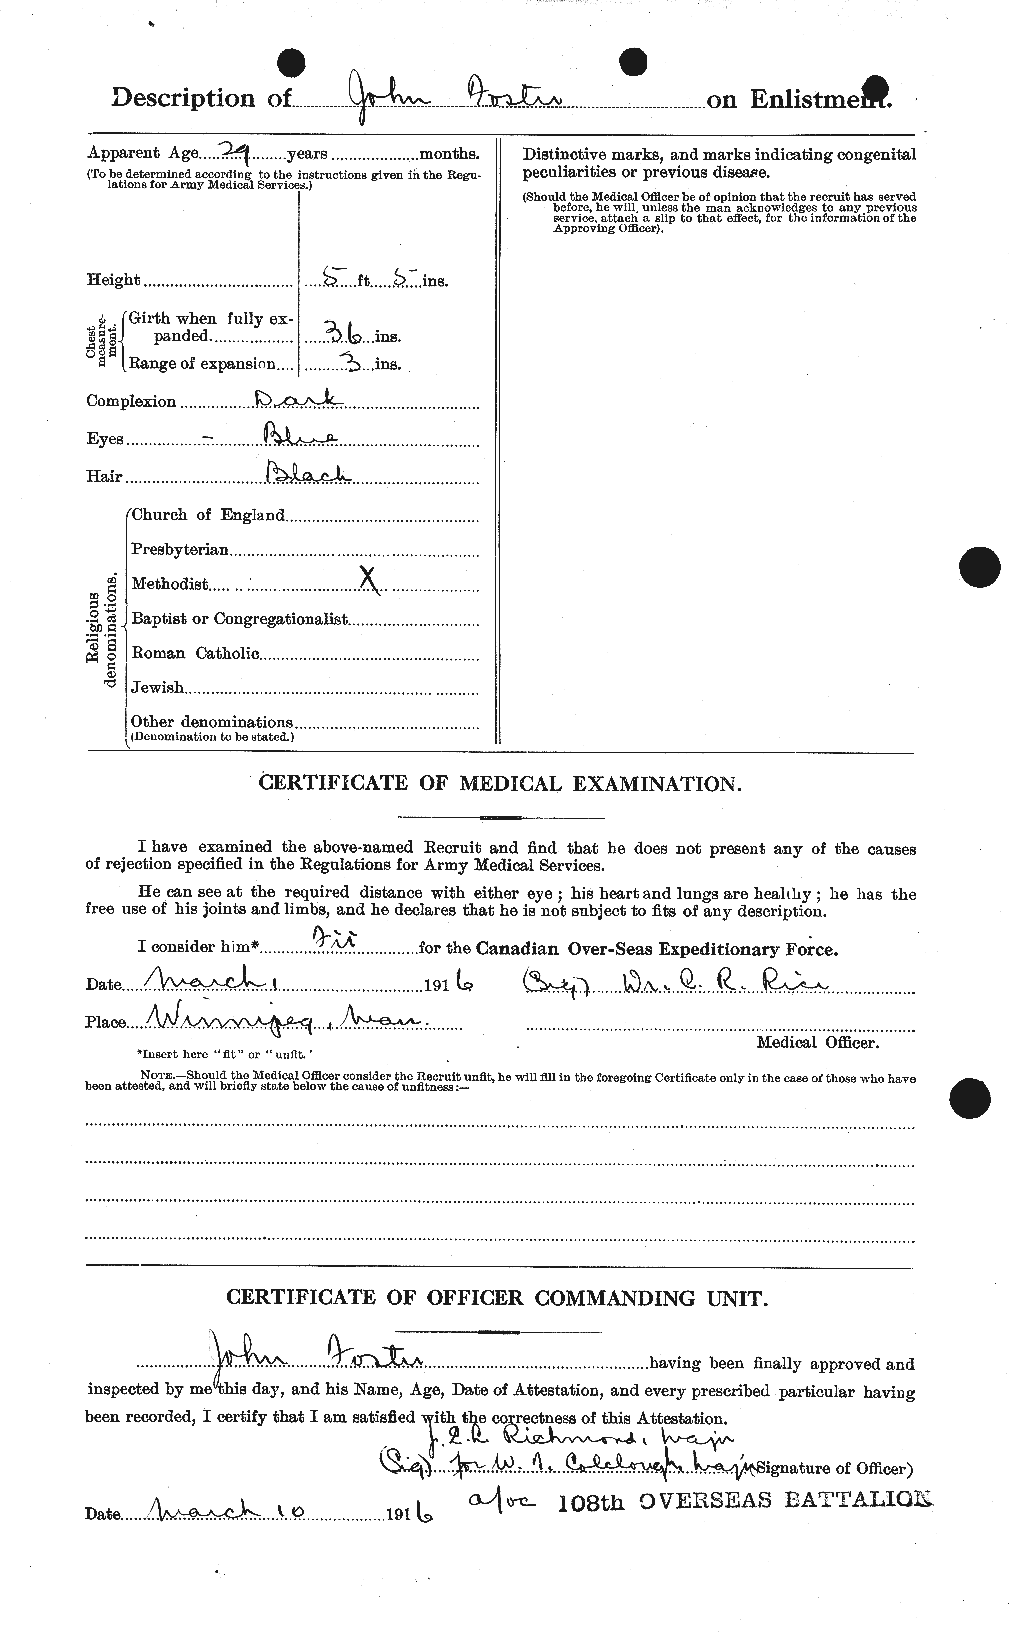 Dossiers du Personnel de la Première Guerre mondiale - CEC 333339b